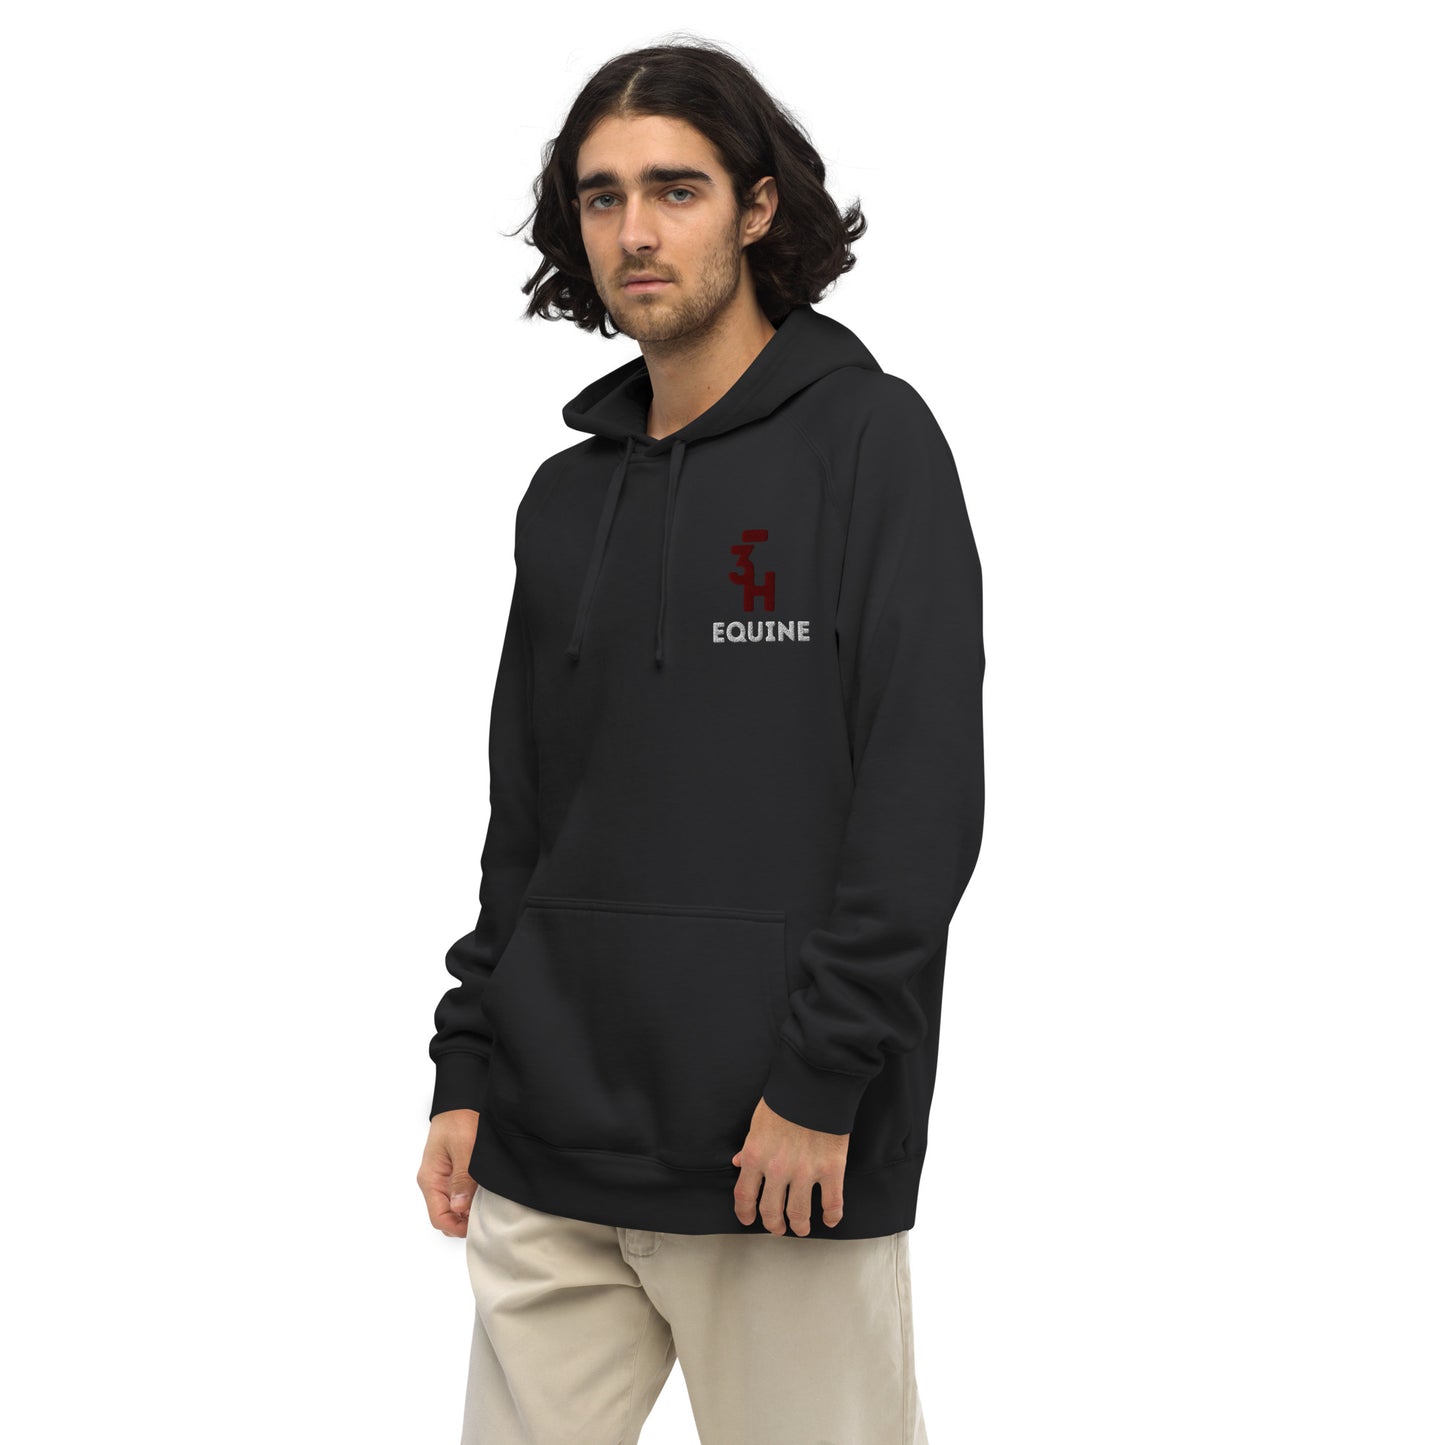 Unisex kangaroo pocket hoodie